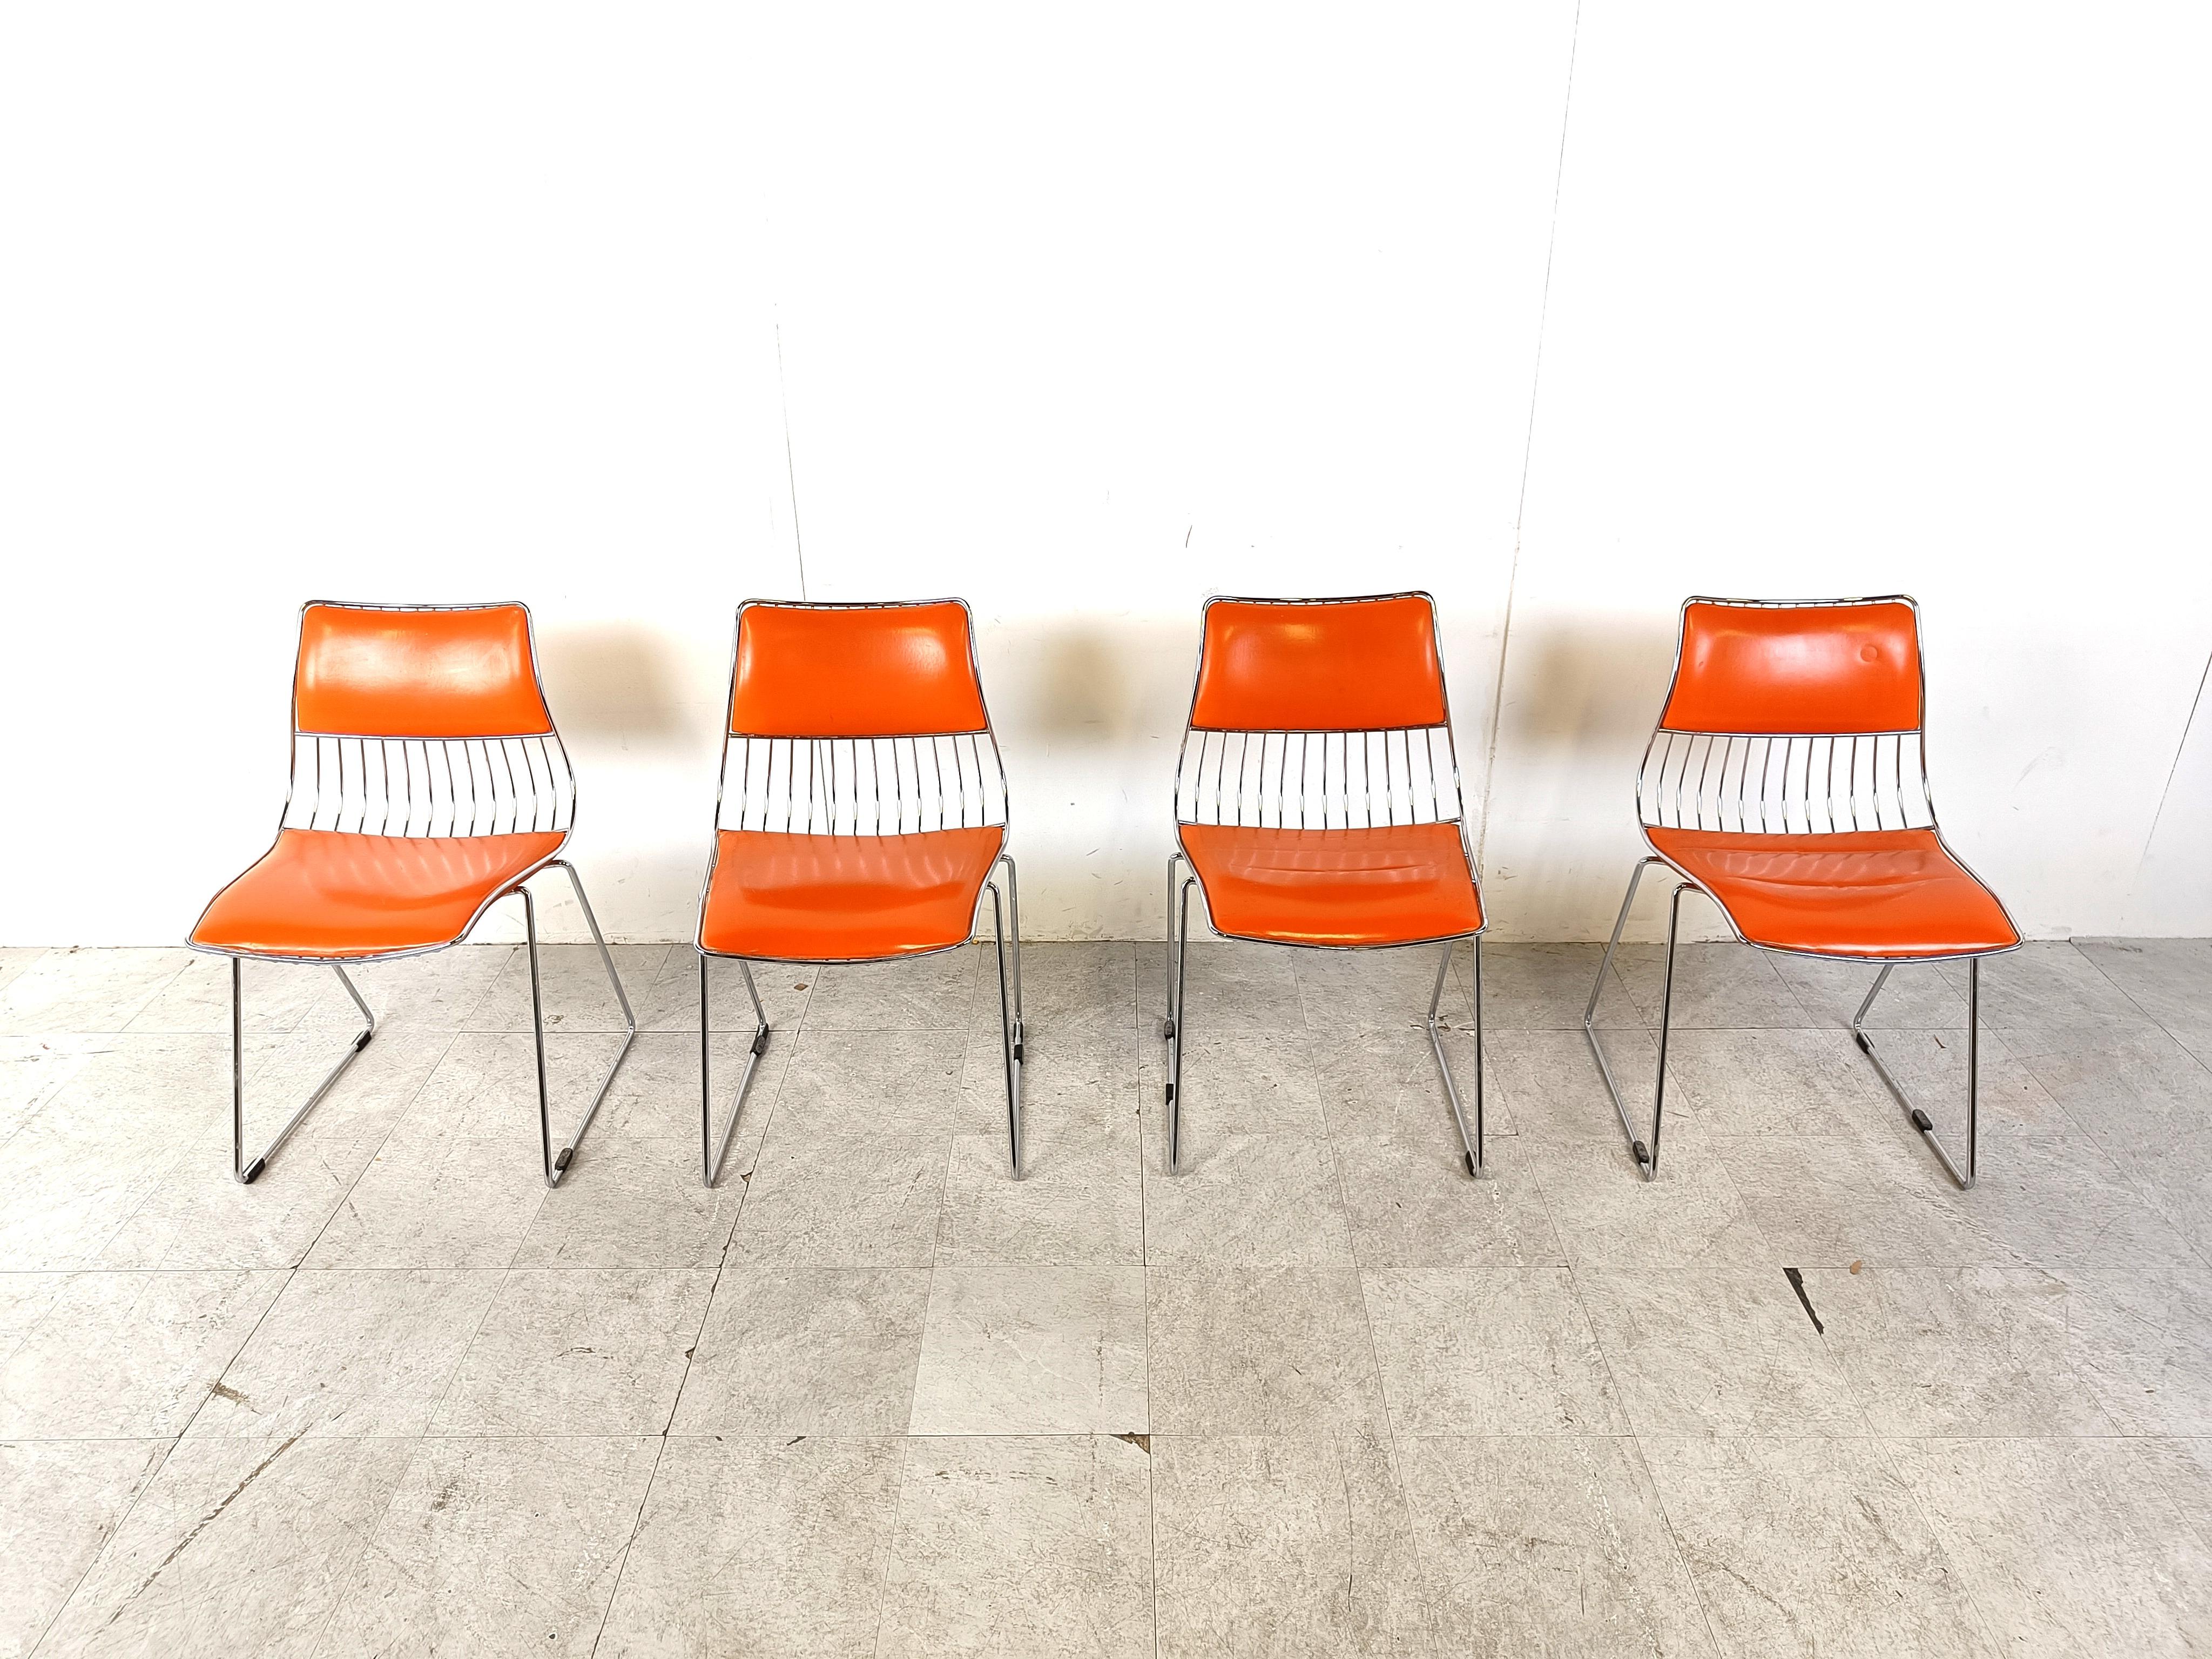 Ensemble de 4 chaises de salle à manger empilables conçu par Rudi Verelst.

Ils sont dotés d'un cadre chromé lourd et d'un revêtement en similicuir orange.

Les chaises sont en très bon état et ne présentent aucun dommage.

Ils sont bien assis et